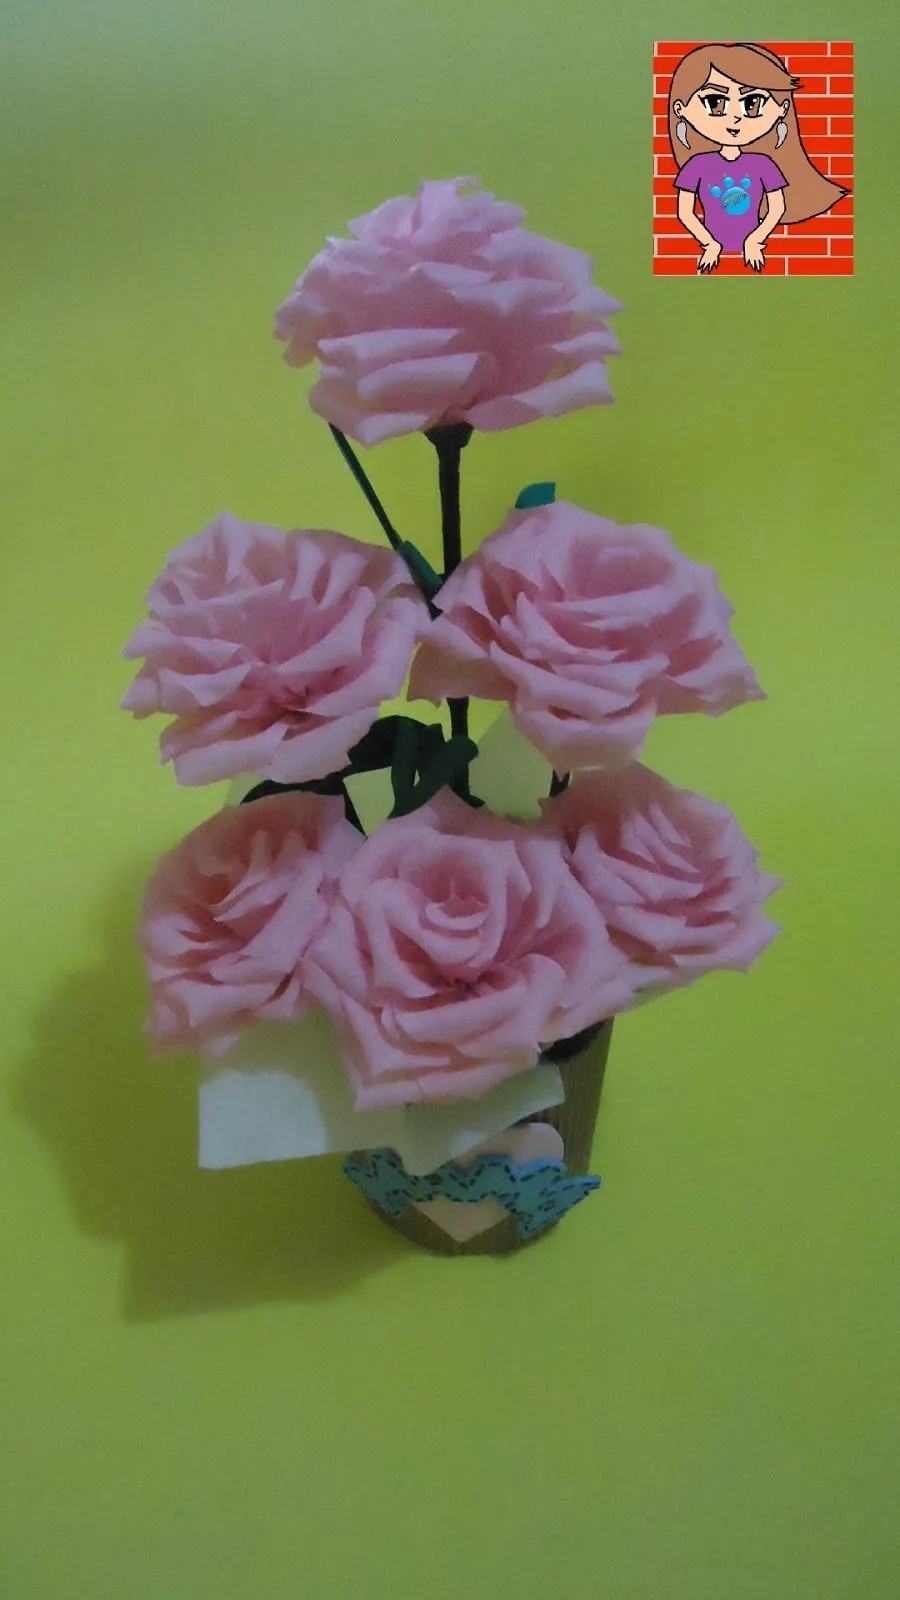 PumitaNegraArt: Arreglo floral con flores de papel crepé